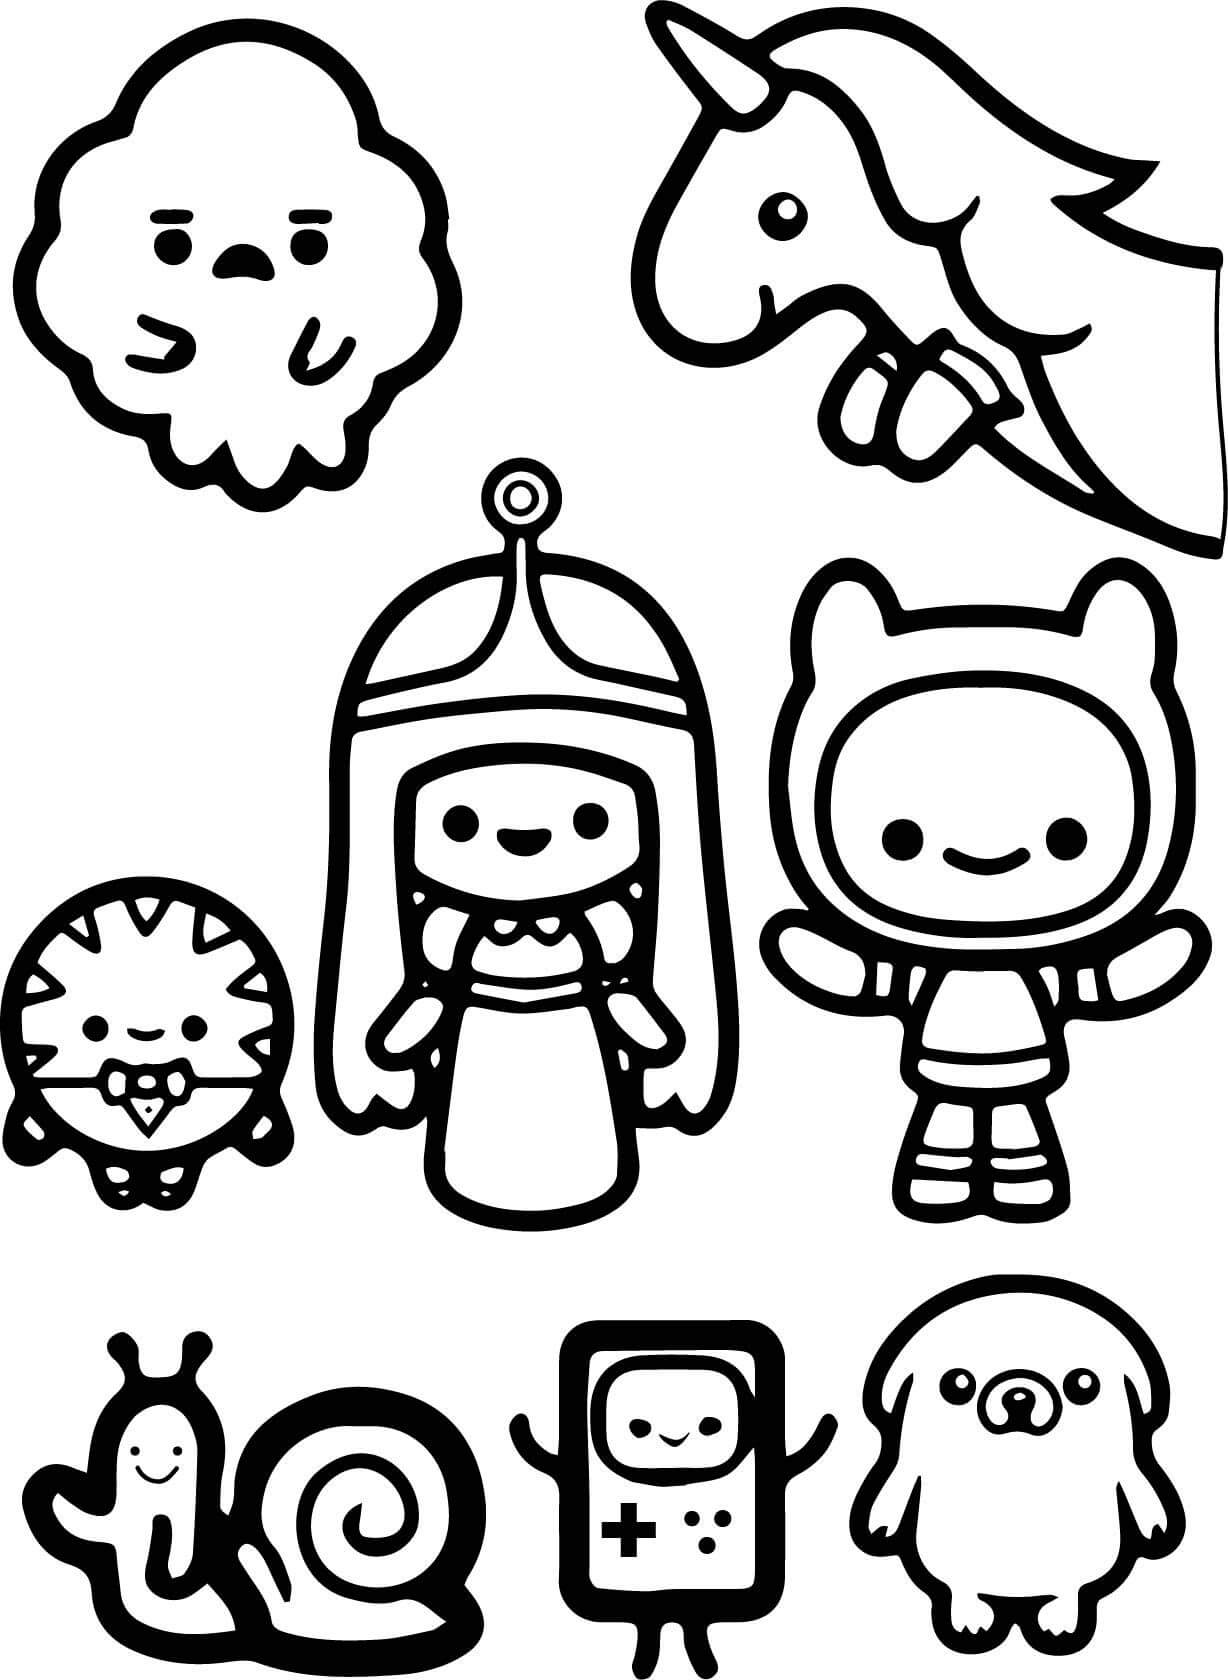 Dibujos de Personajes Chibi de Hora de Aventuras para colorear